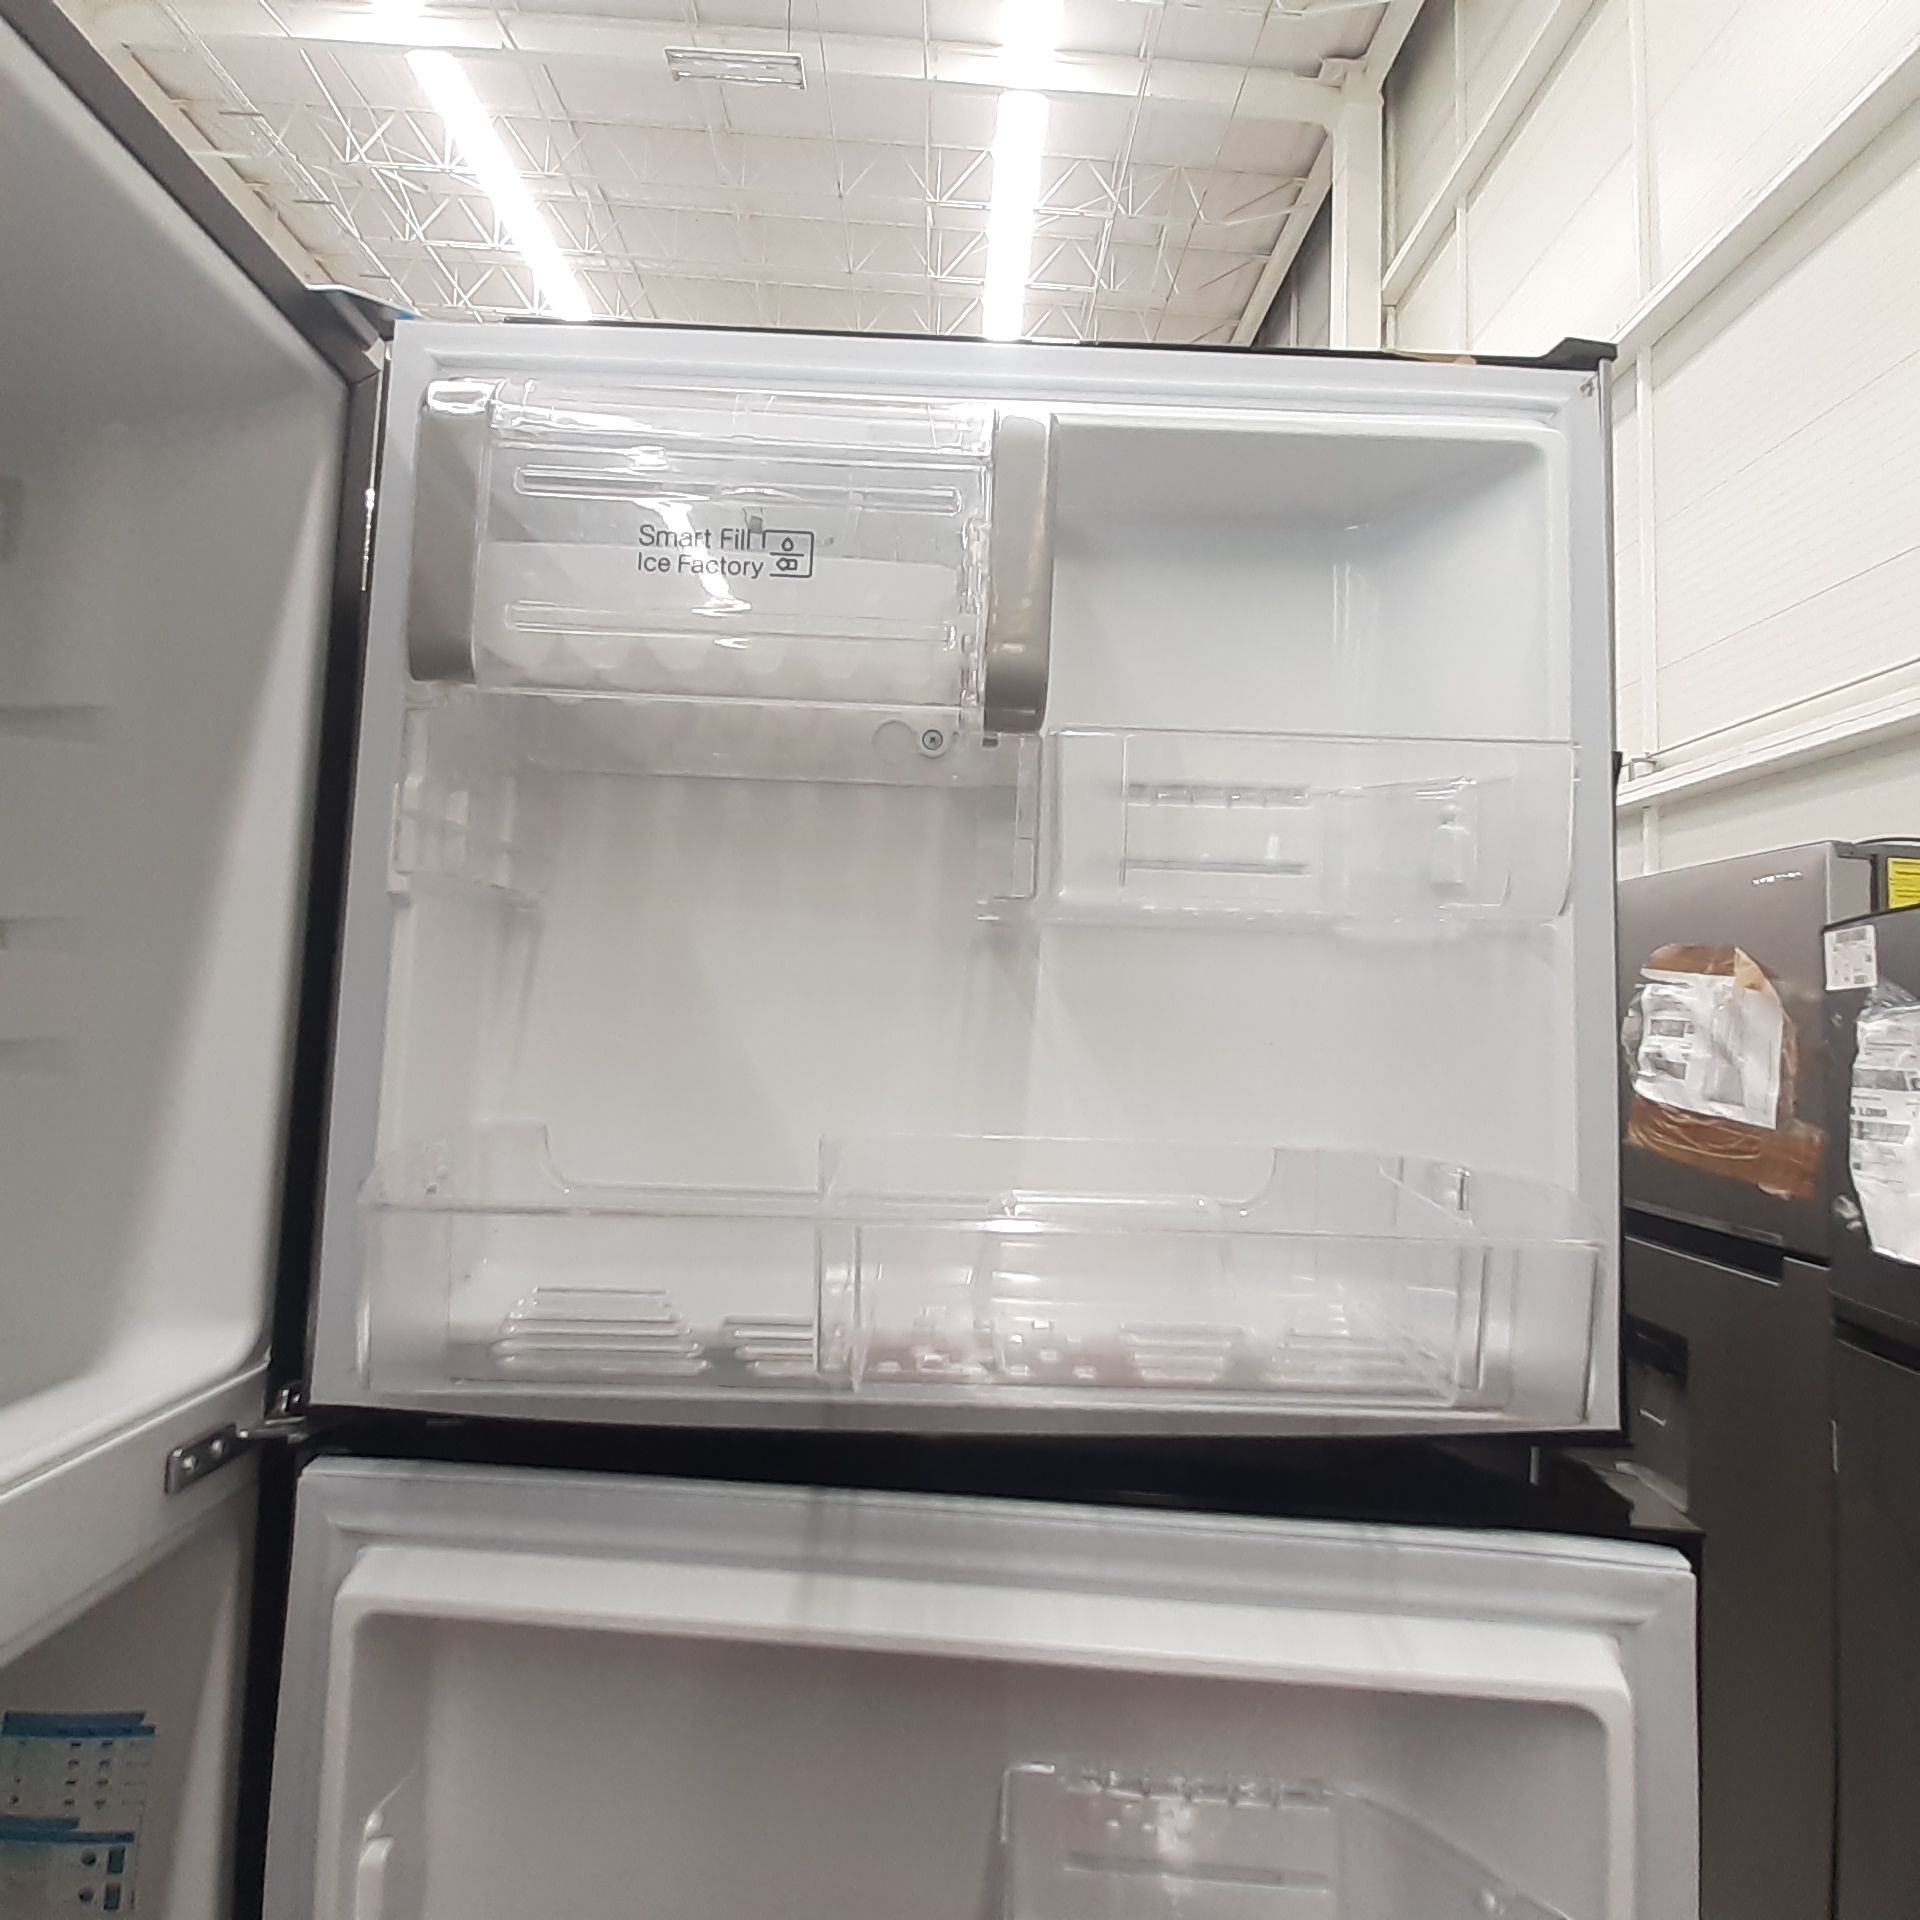 Lote De 2 Refrigeradores: 1 Refrigerador Marca Whirlpool, 1 Refrigerador Marca Mabe, Distintos Model - Image 13 of 22